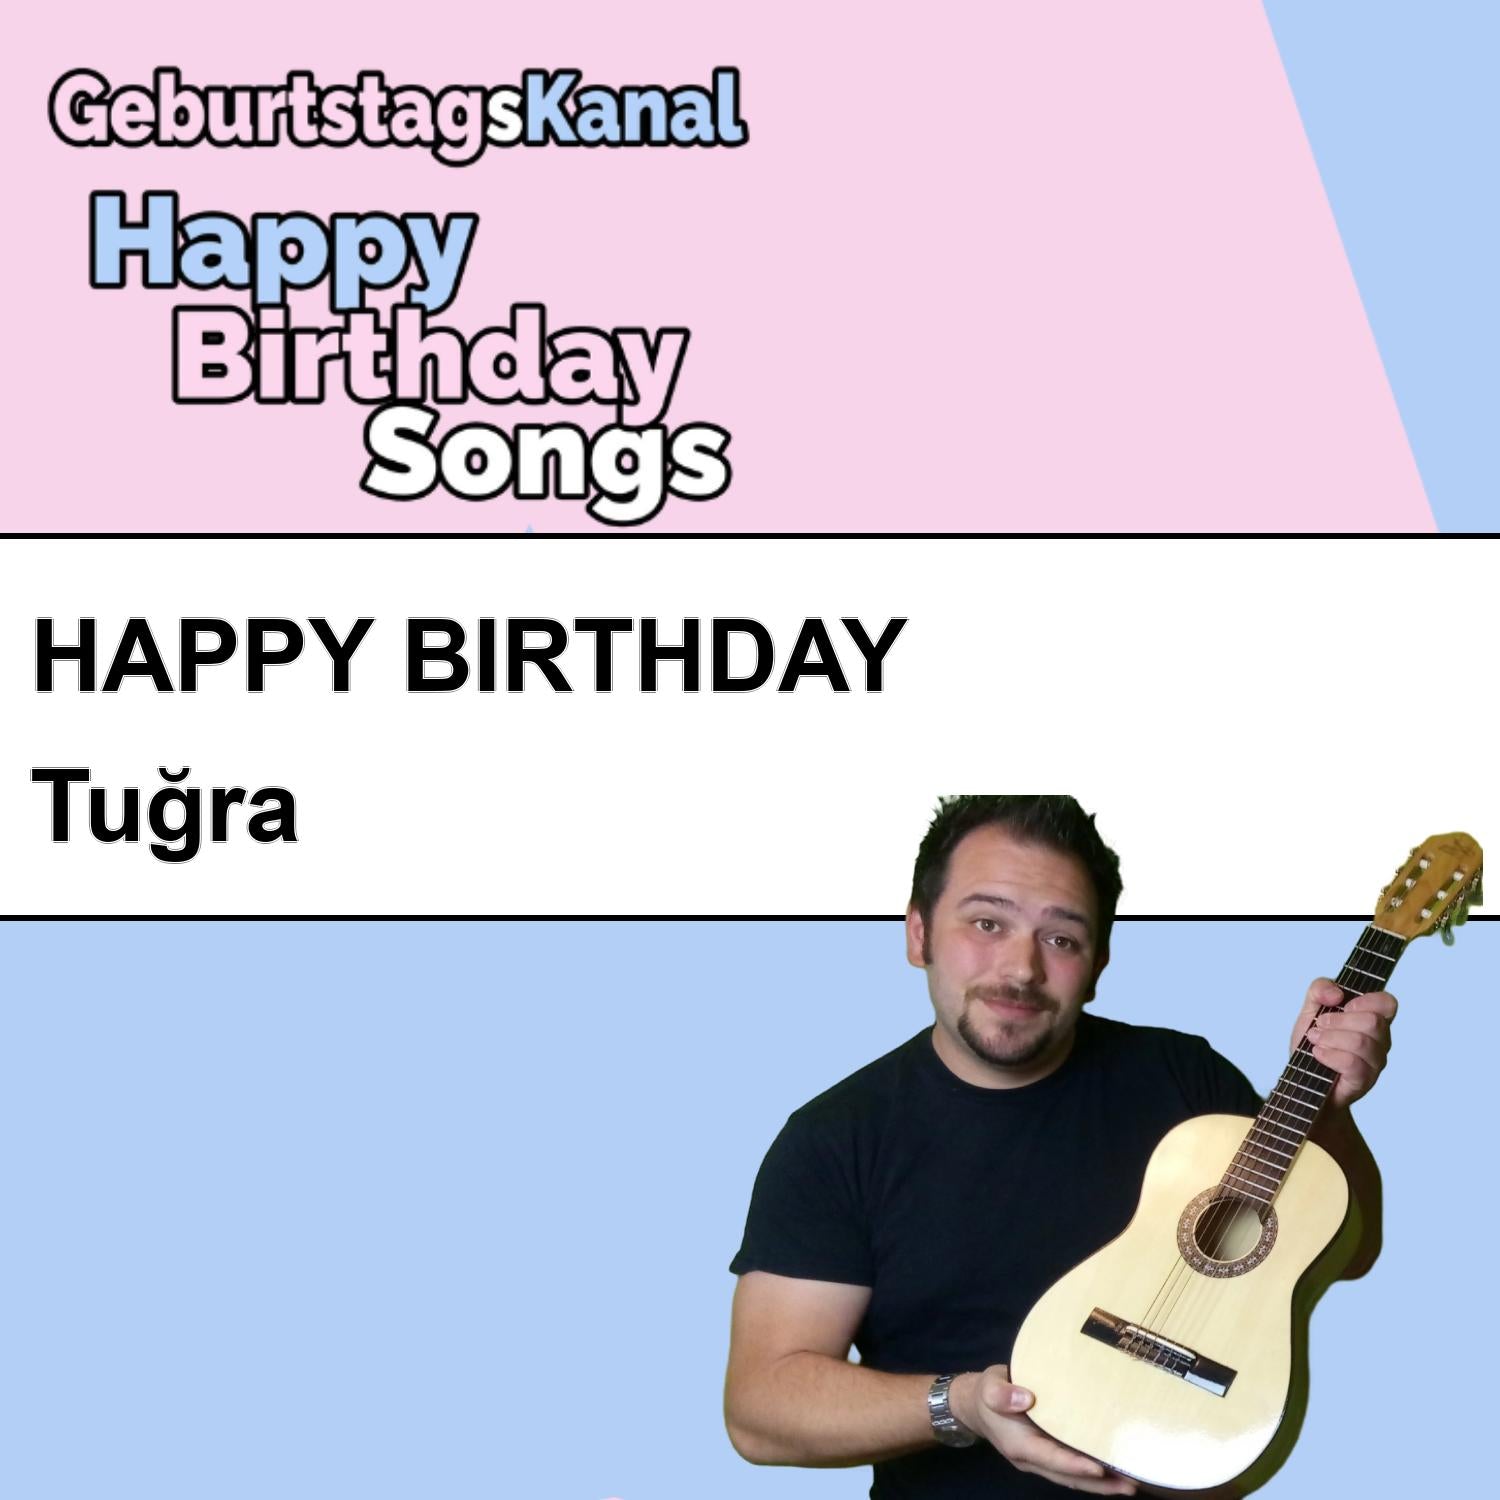 Produktbild Happy Birthday to you Tuğra mit Wunschgrußbotschaft